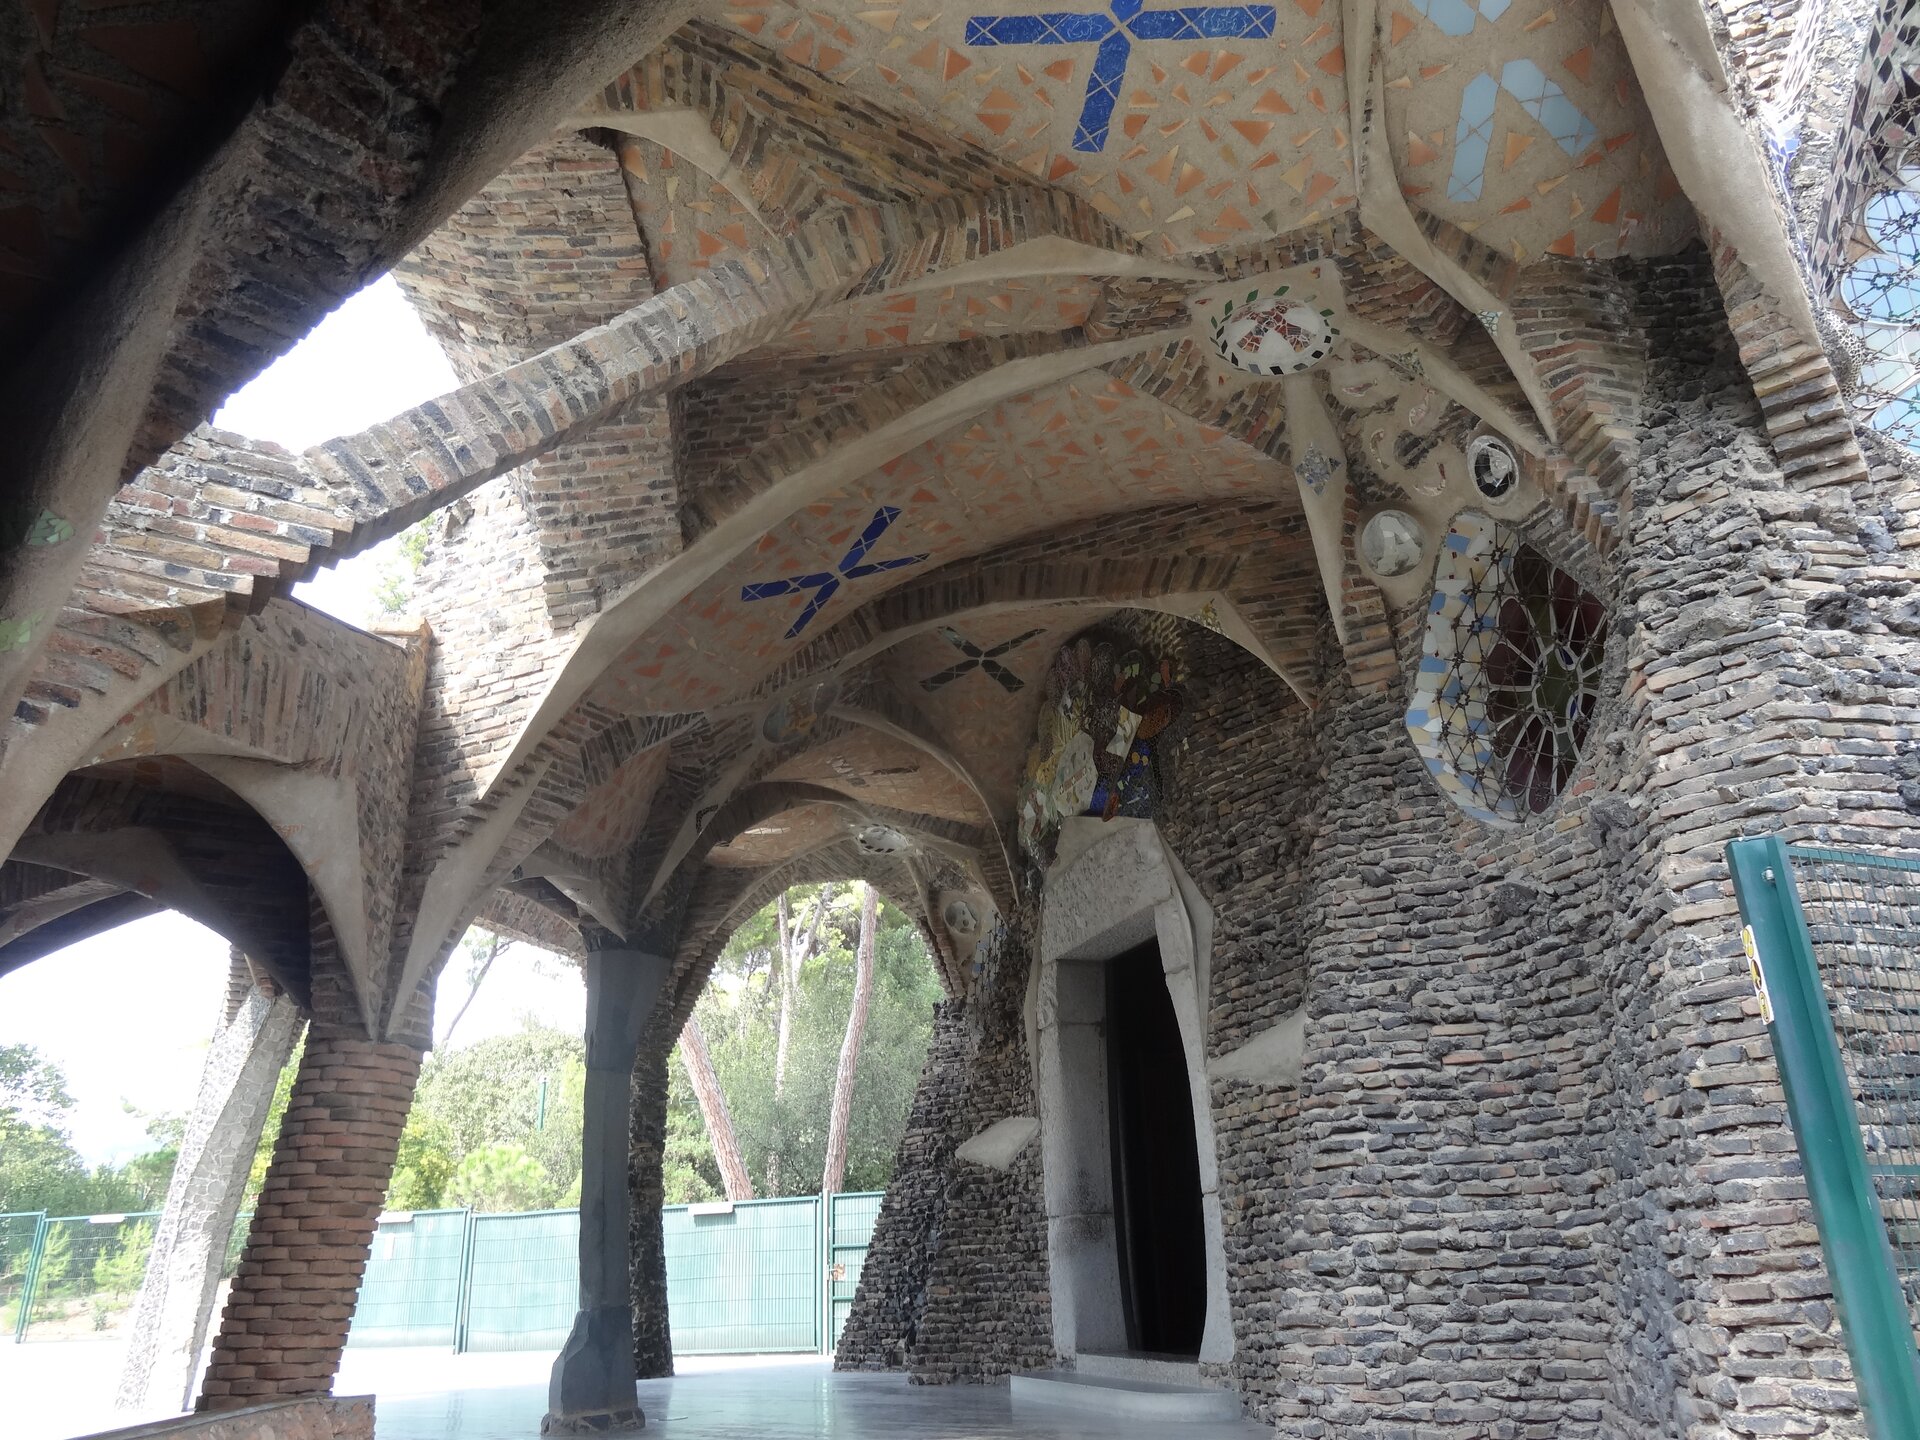 Ilustracja o kształcie poziomego prostokąta przedstawia portyk Krypty w kolonii Guell, Santa Coloma de Cervelló, zaprojektowany przez Gaudiego. Obiekt ma szaro-brązową barwę, Kolumny zewnętrzne posiadają  kształt rosnących pni wyrastających z ziemi i połączonych z bryłą łukami o zróżnicowanych kształtach. Do wewnątrz prowadzi niewielkie wejście otoczone białym tynkiem. W ściennie znajduje się okrągłe okno dekorowane na styl gotyckiej rozety.